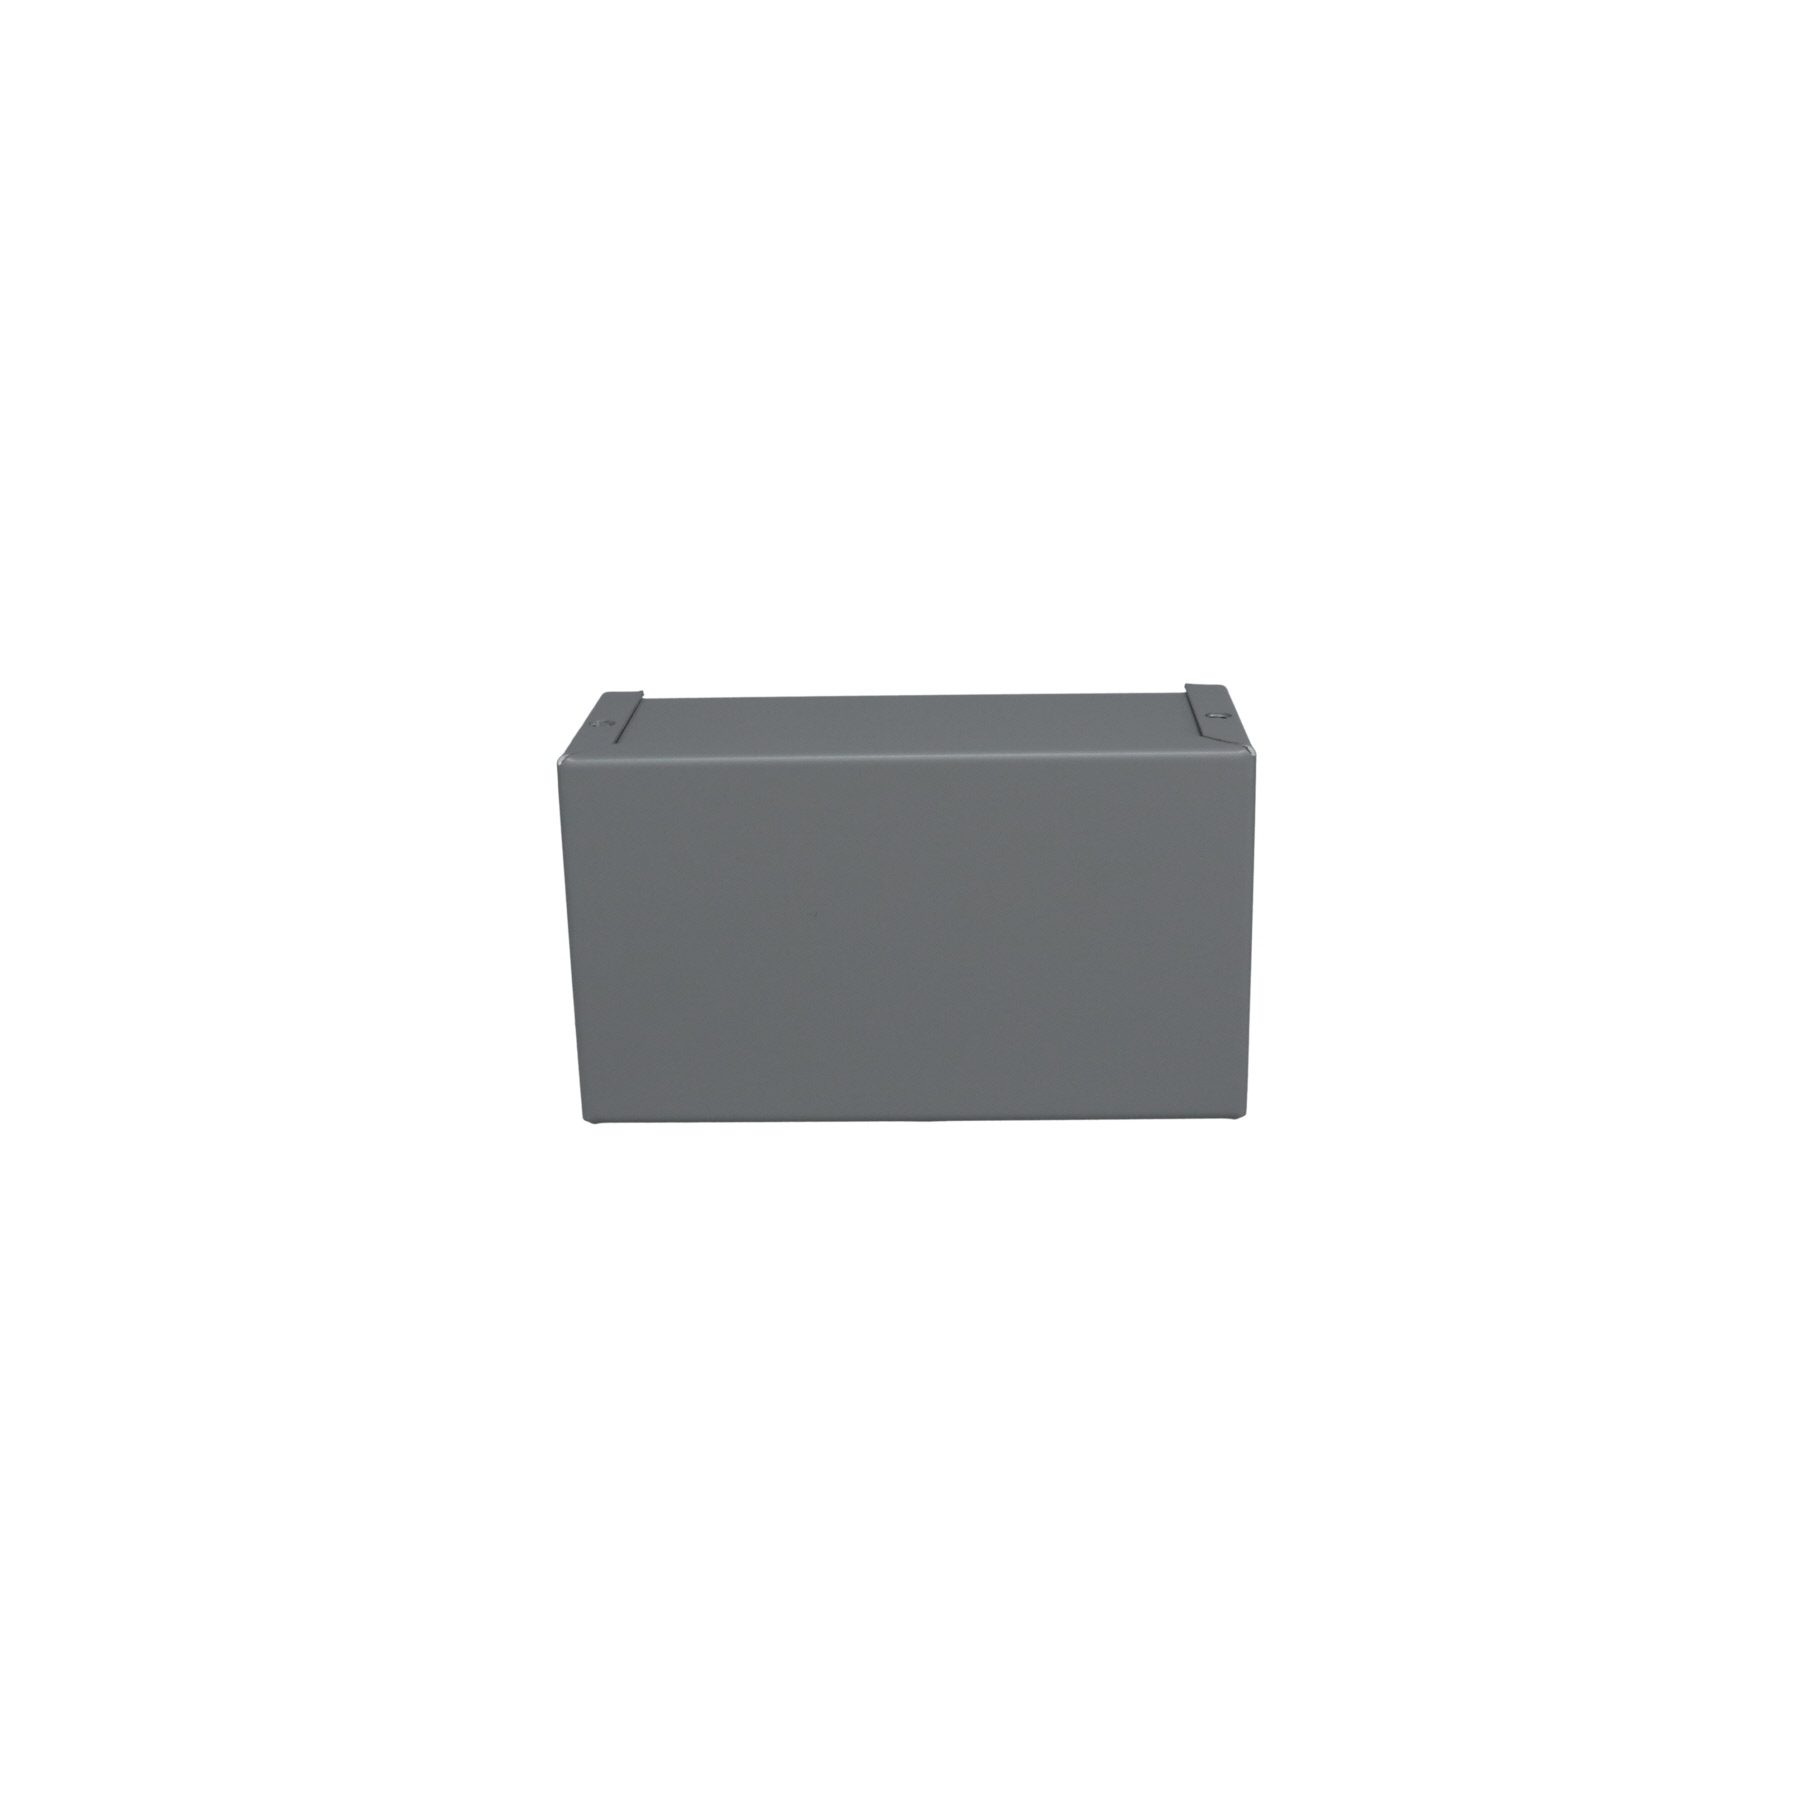 Minibox Small Metal Box Gray CU-2106-B